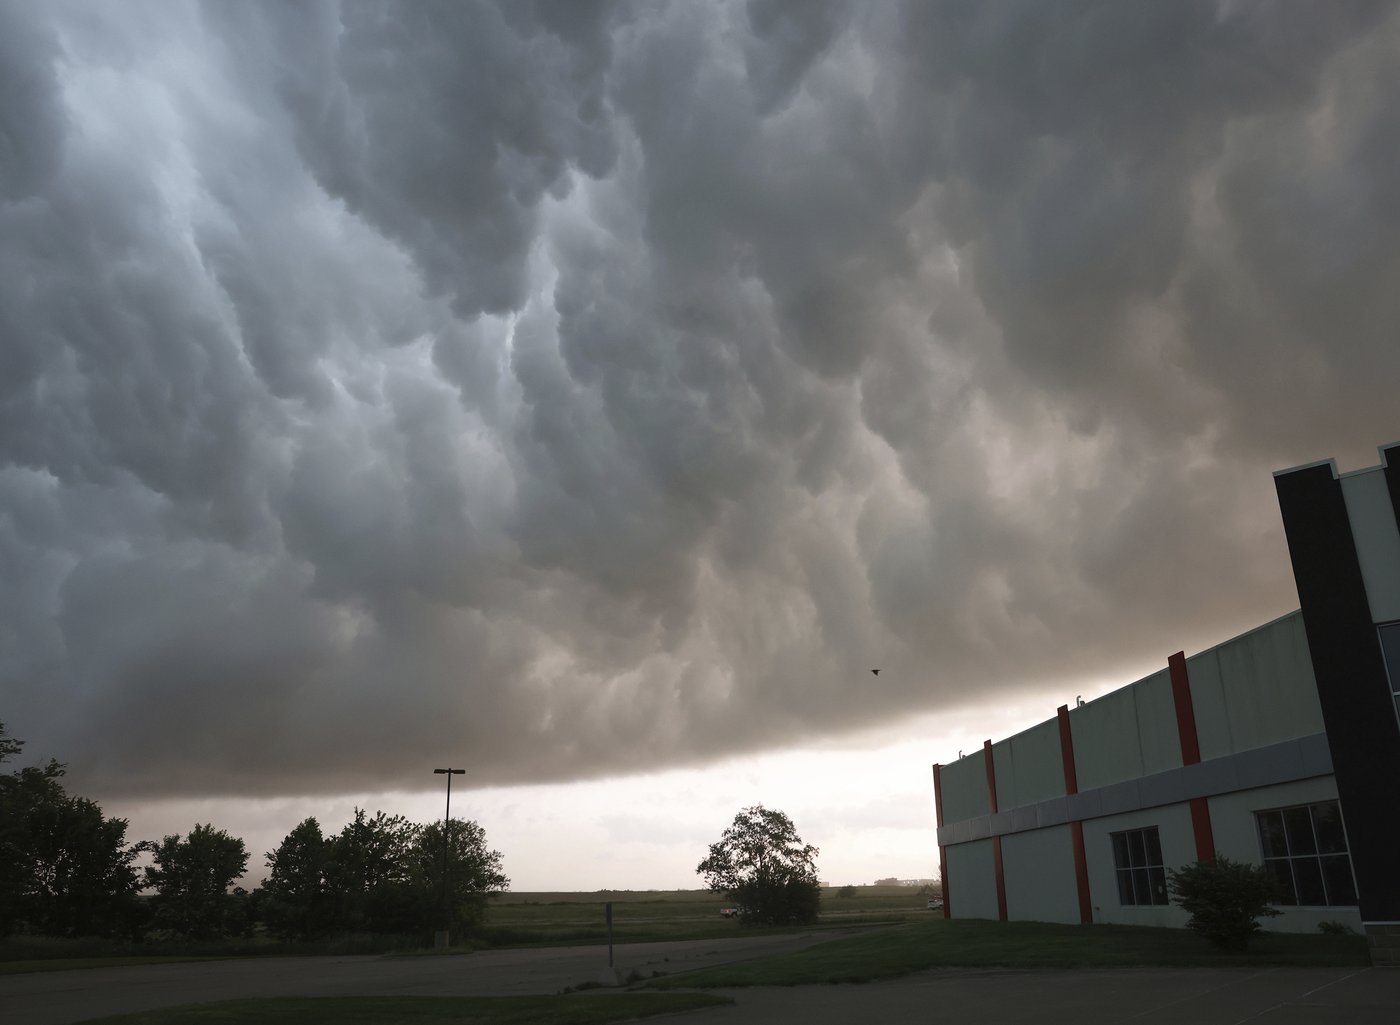 Le Midwest et le Texas pourraient connaître des événements météorologiques extrêmes